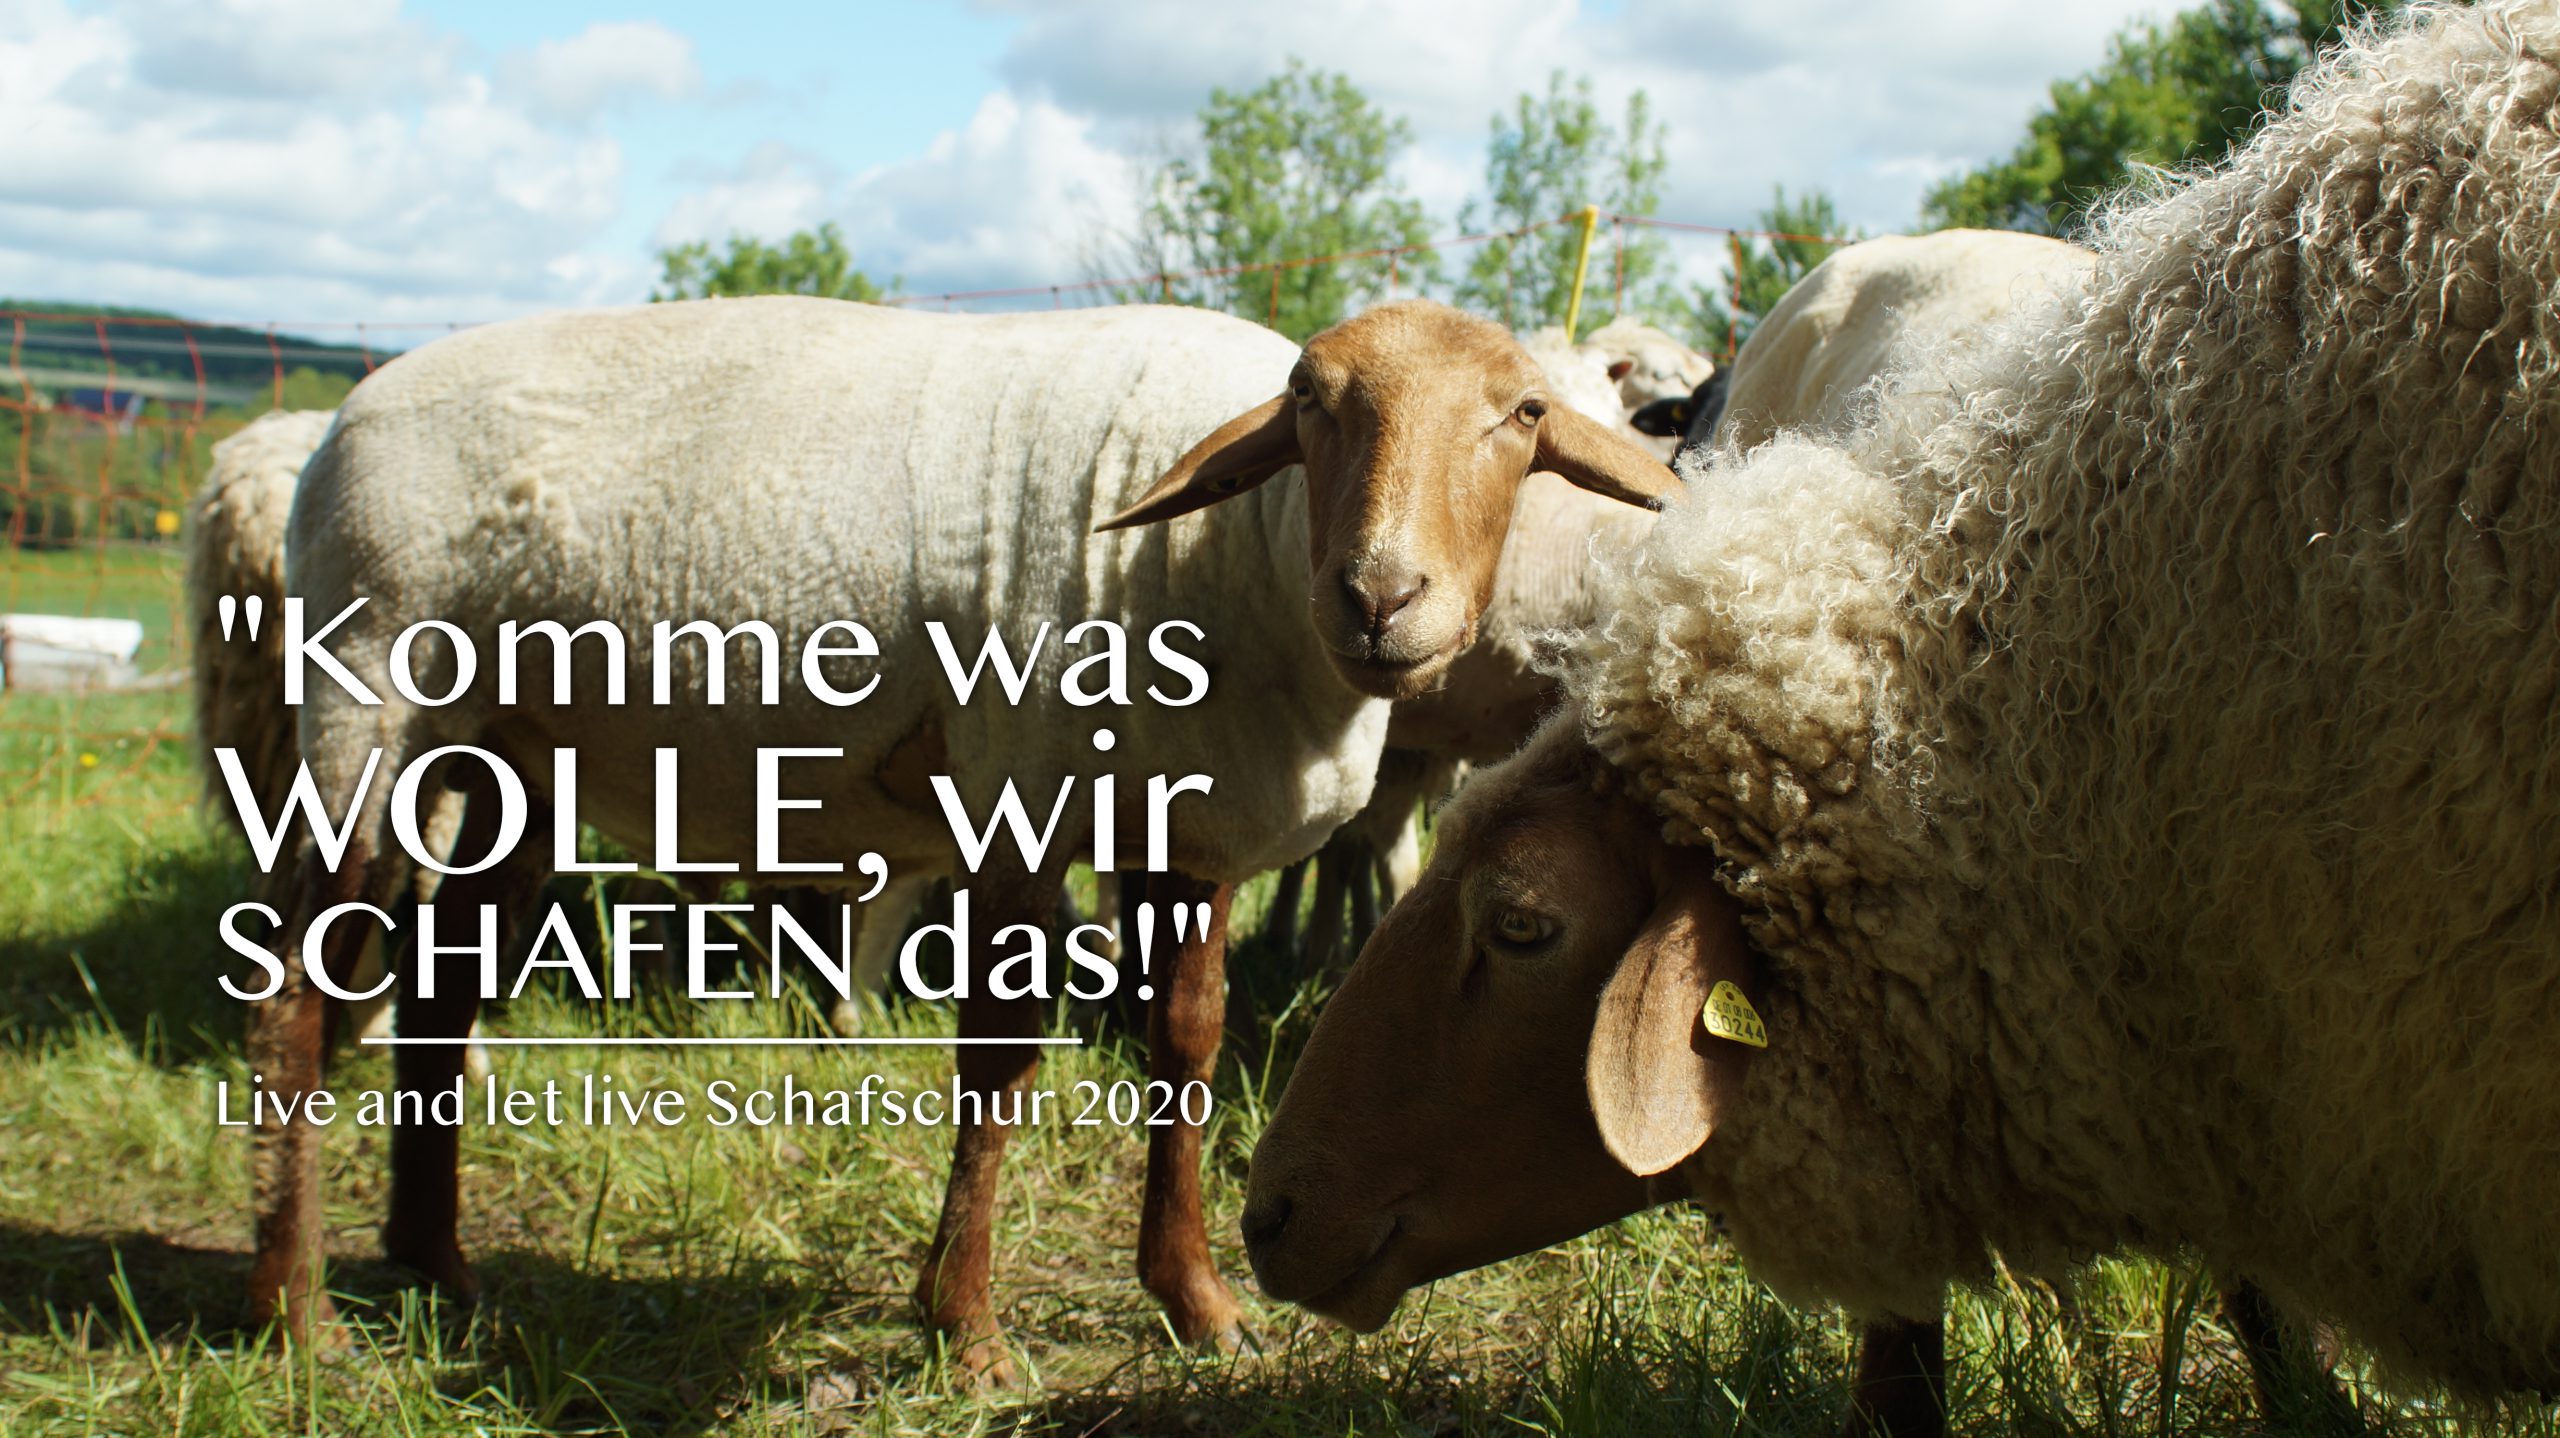 Live and let live Schafschur 2020: Komme was Wolle gemeinsam Schafen wir das! Tierschutz Schwaigern Banner